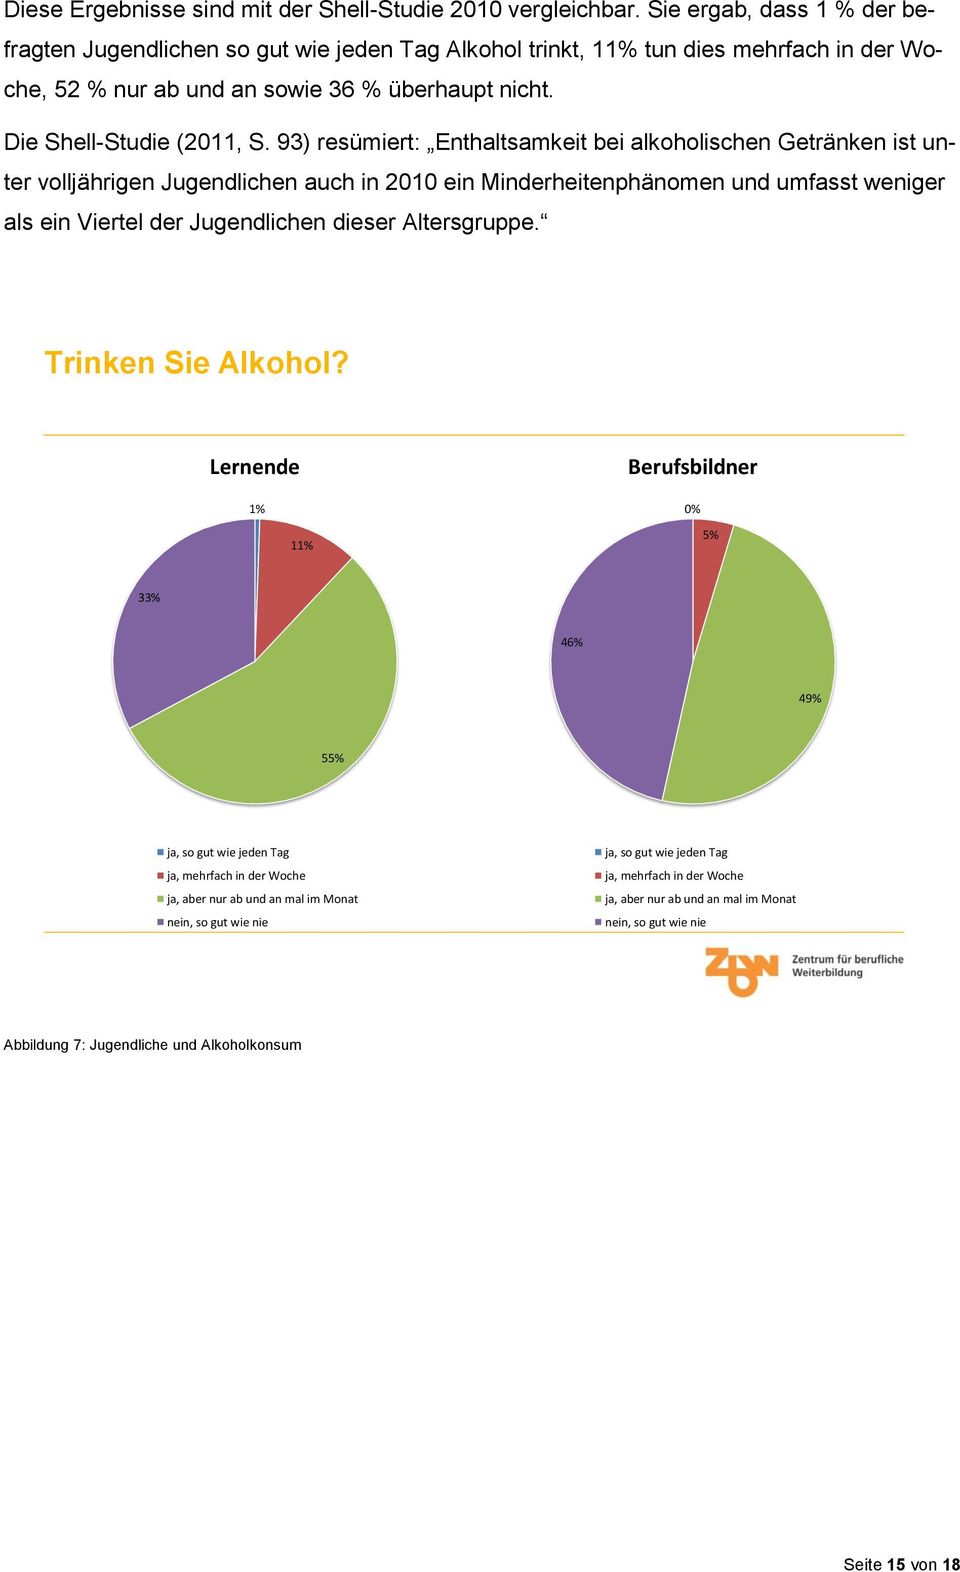 93) resümiert: Enthaltsamkeit bei alkoholischen Getränken ist unter volljährigen Jugendlichen auch in 2010 ein Minderheitenphänomen und umfasst weniger als ein Viertel der Jugendlichen dieser